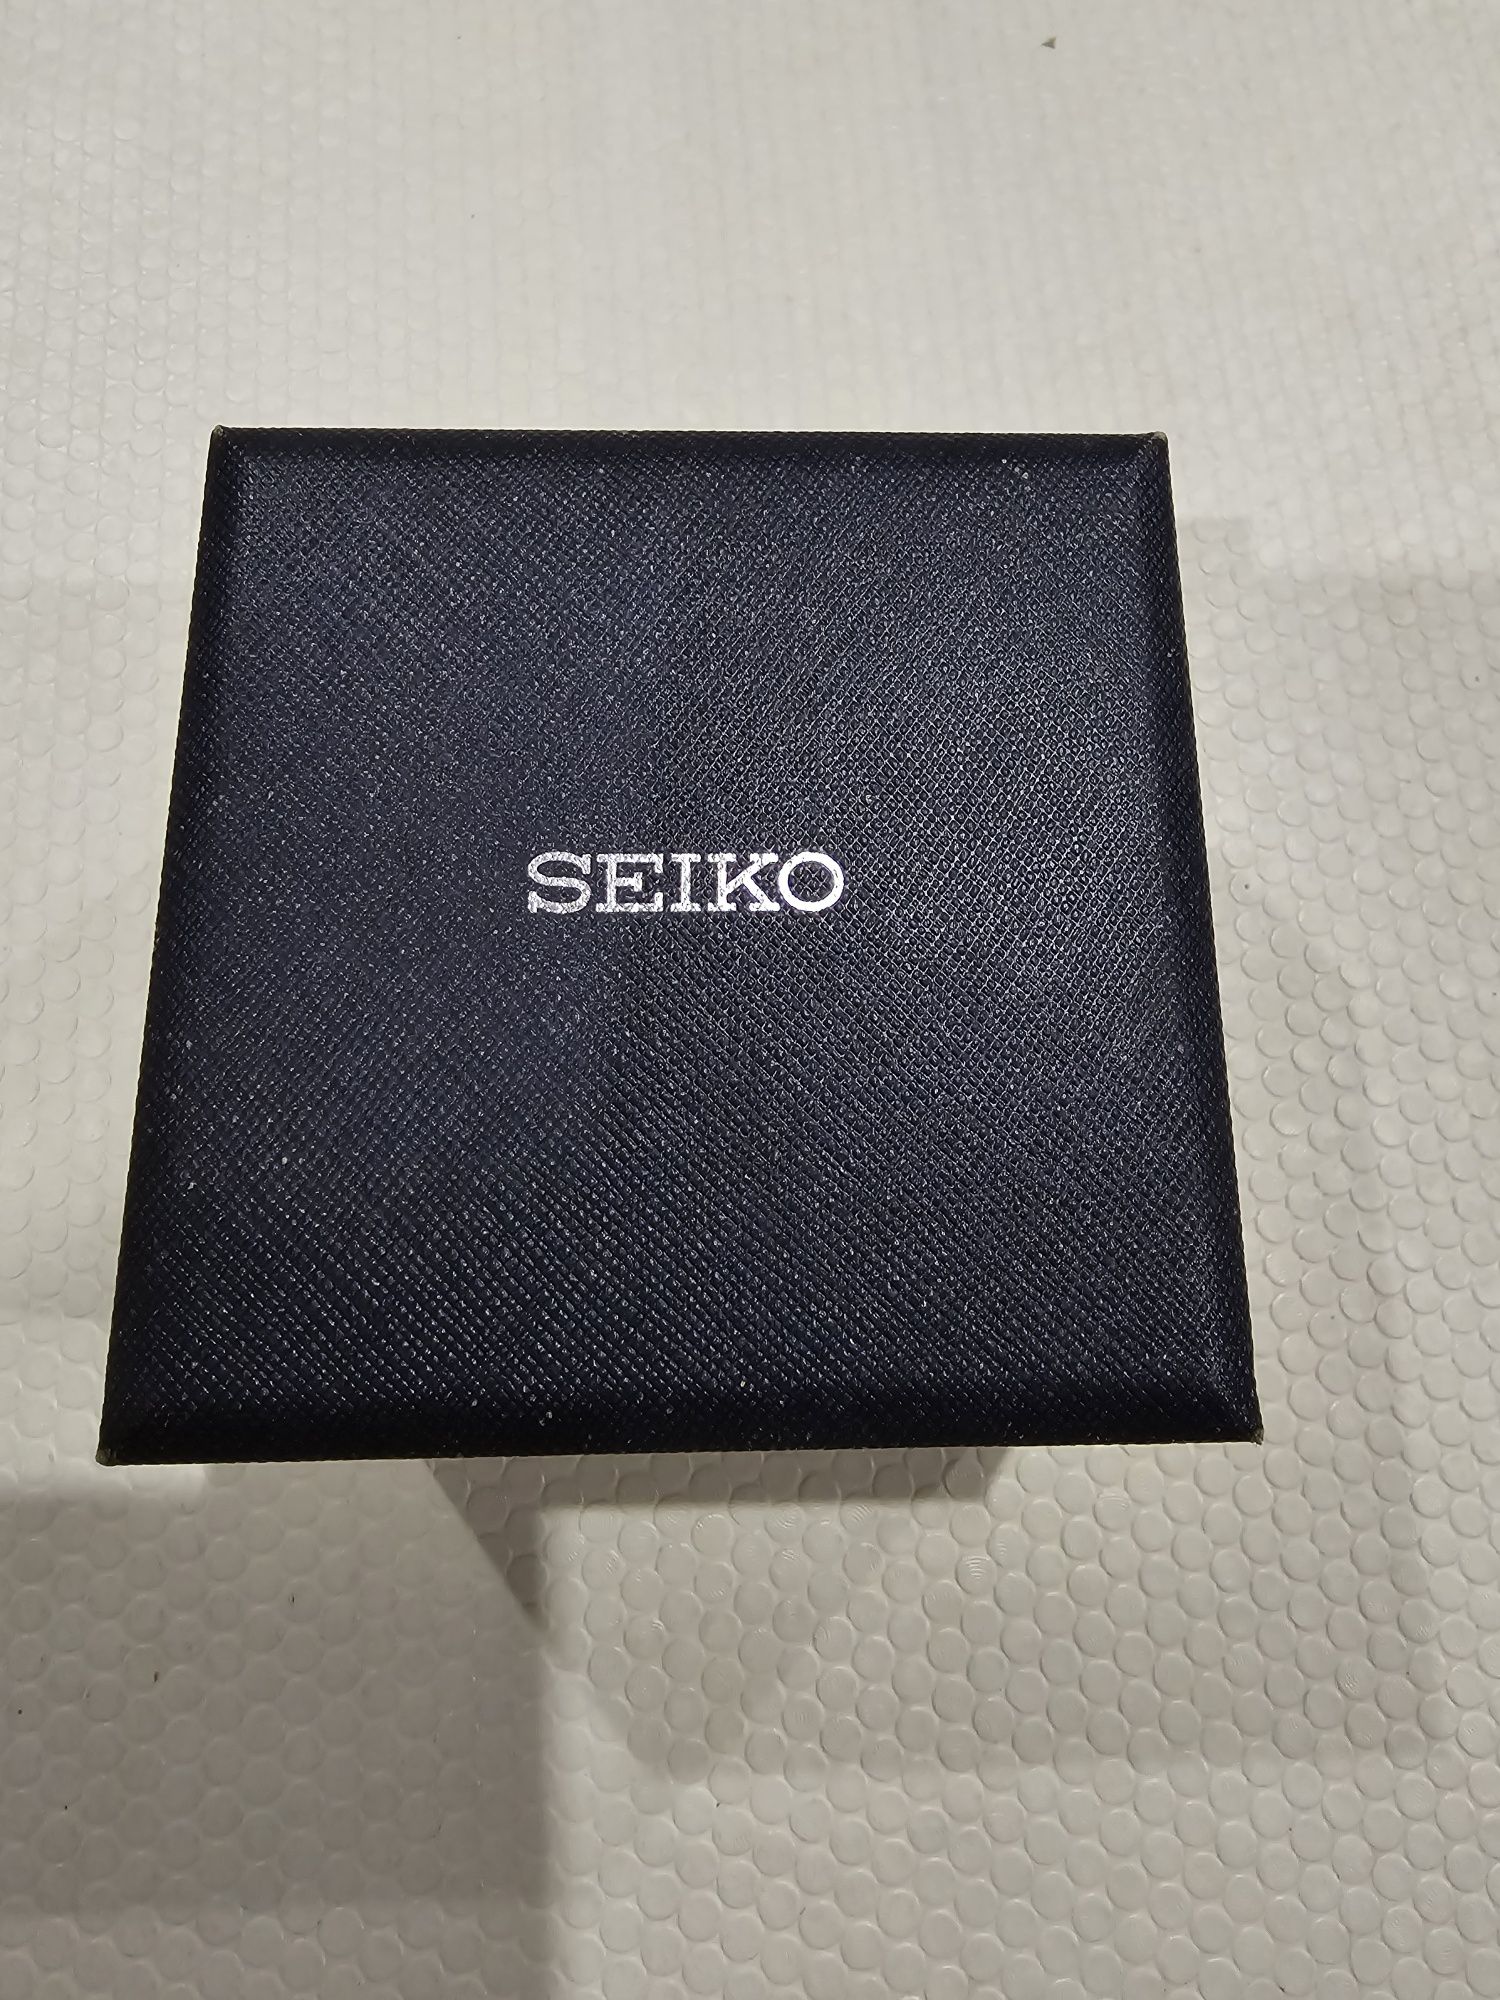 Seiko Prospex Scuba SBDC001 Sumo Diver